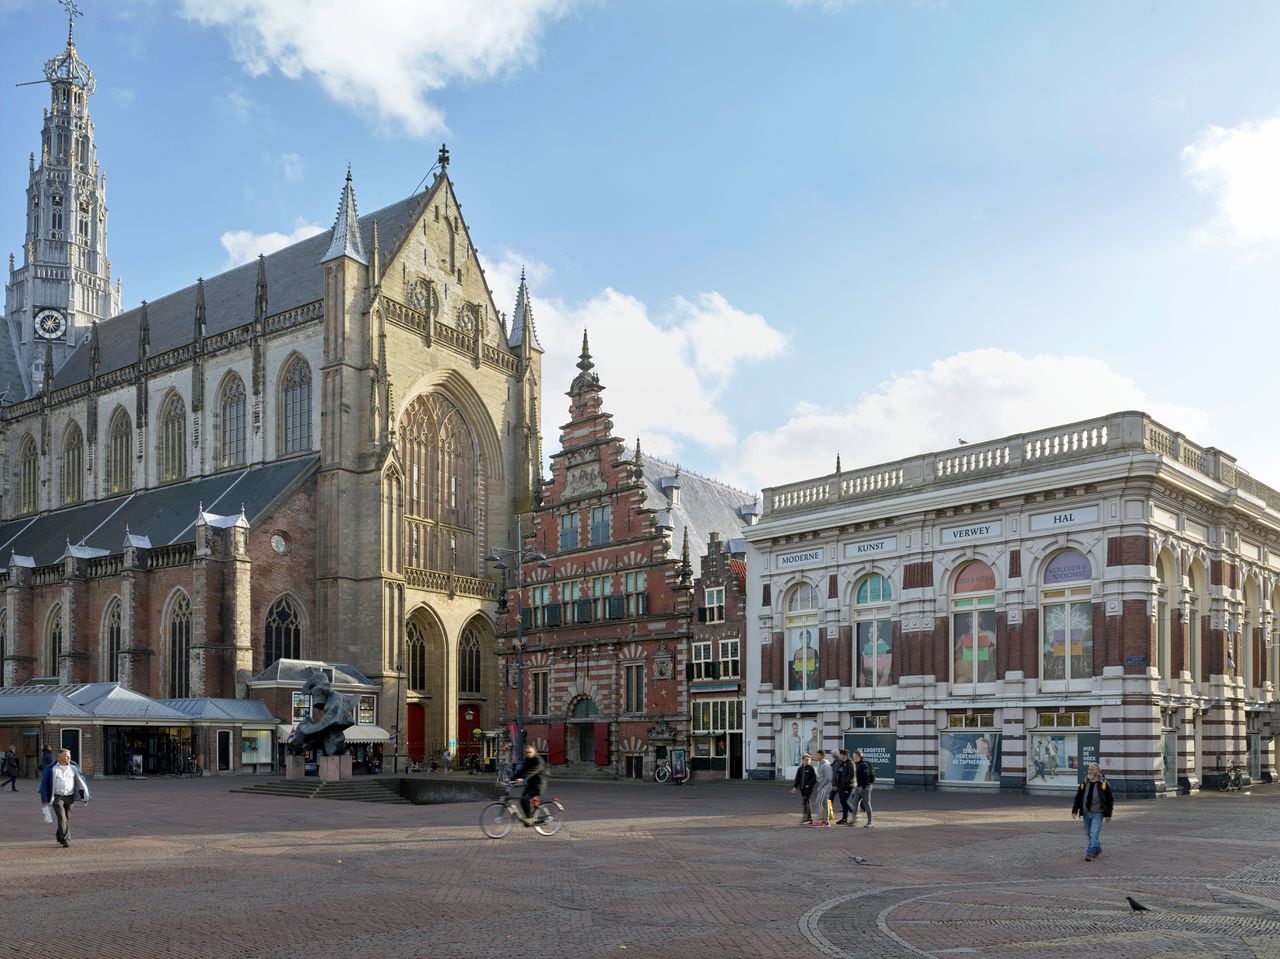 De locatie Hal van het Frans Hals Museum aan de Grote Markt in Haarlem. Het zijn feitelijk drie gebouwen, de ingang zit verstopt in het vishuisje, tussen het gebouw uit 1600 links en de Verweyhal rechts.